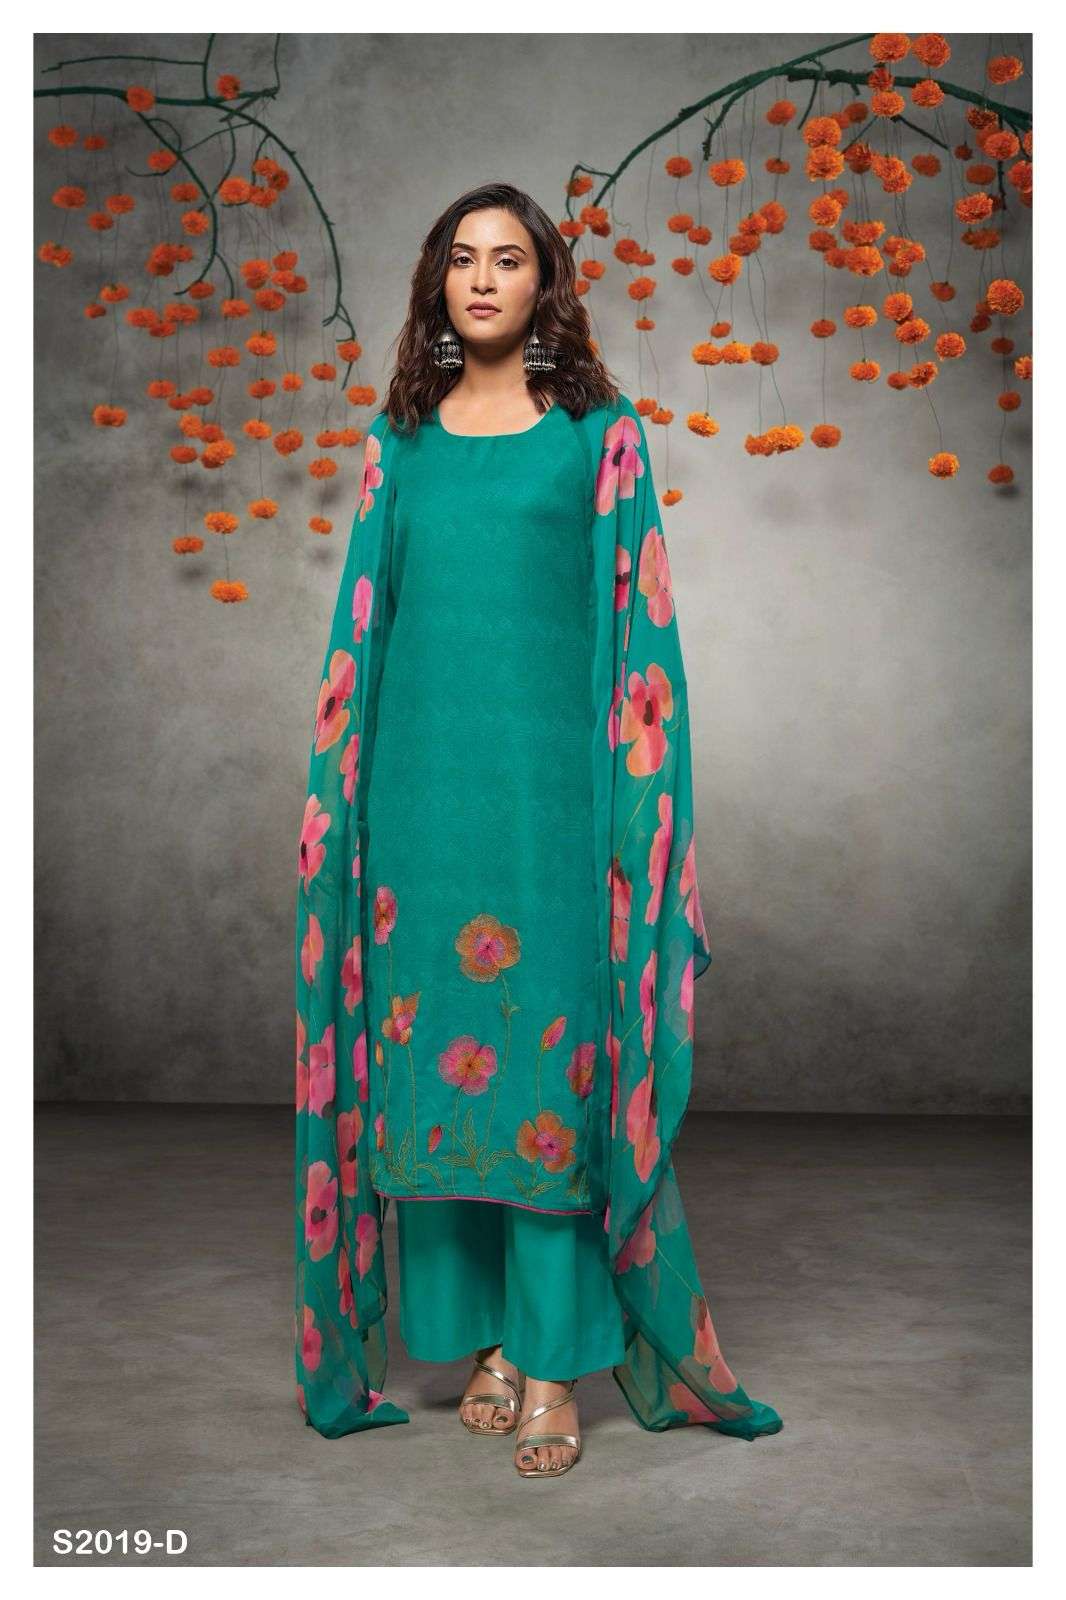 Suit salwar | Punjabi suits designer boutique, Patiala suit designs,  Stylish dresses for girls